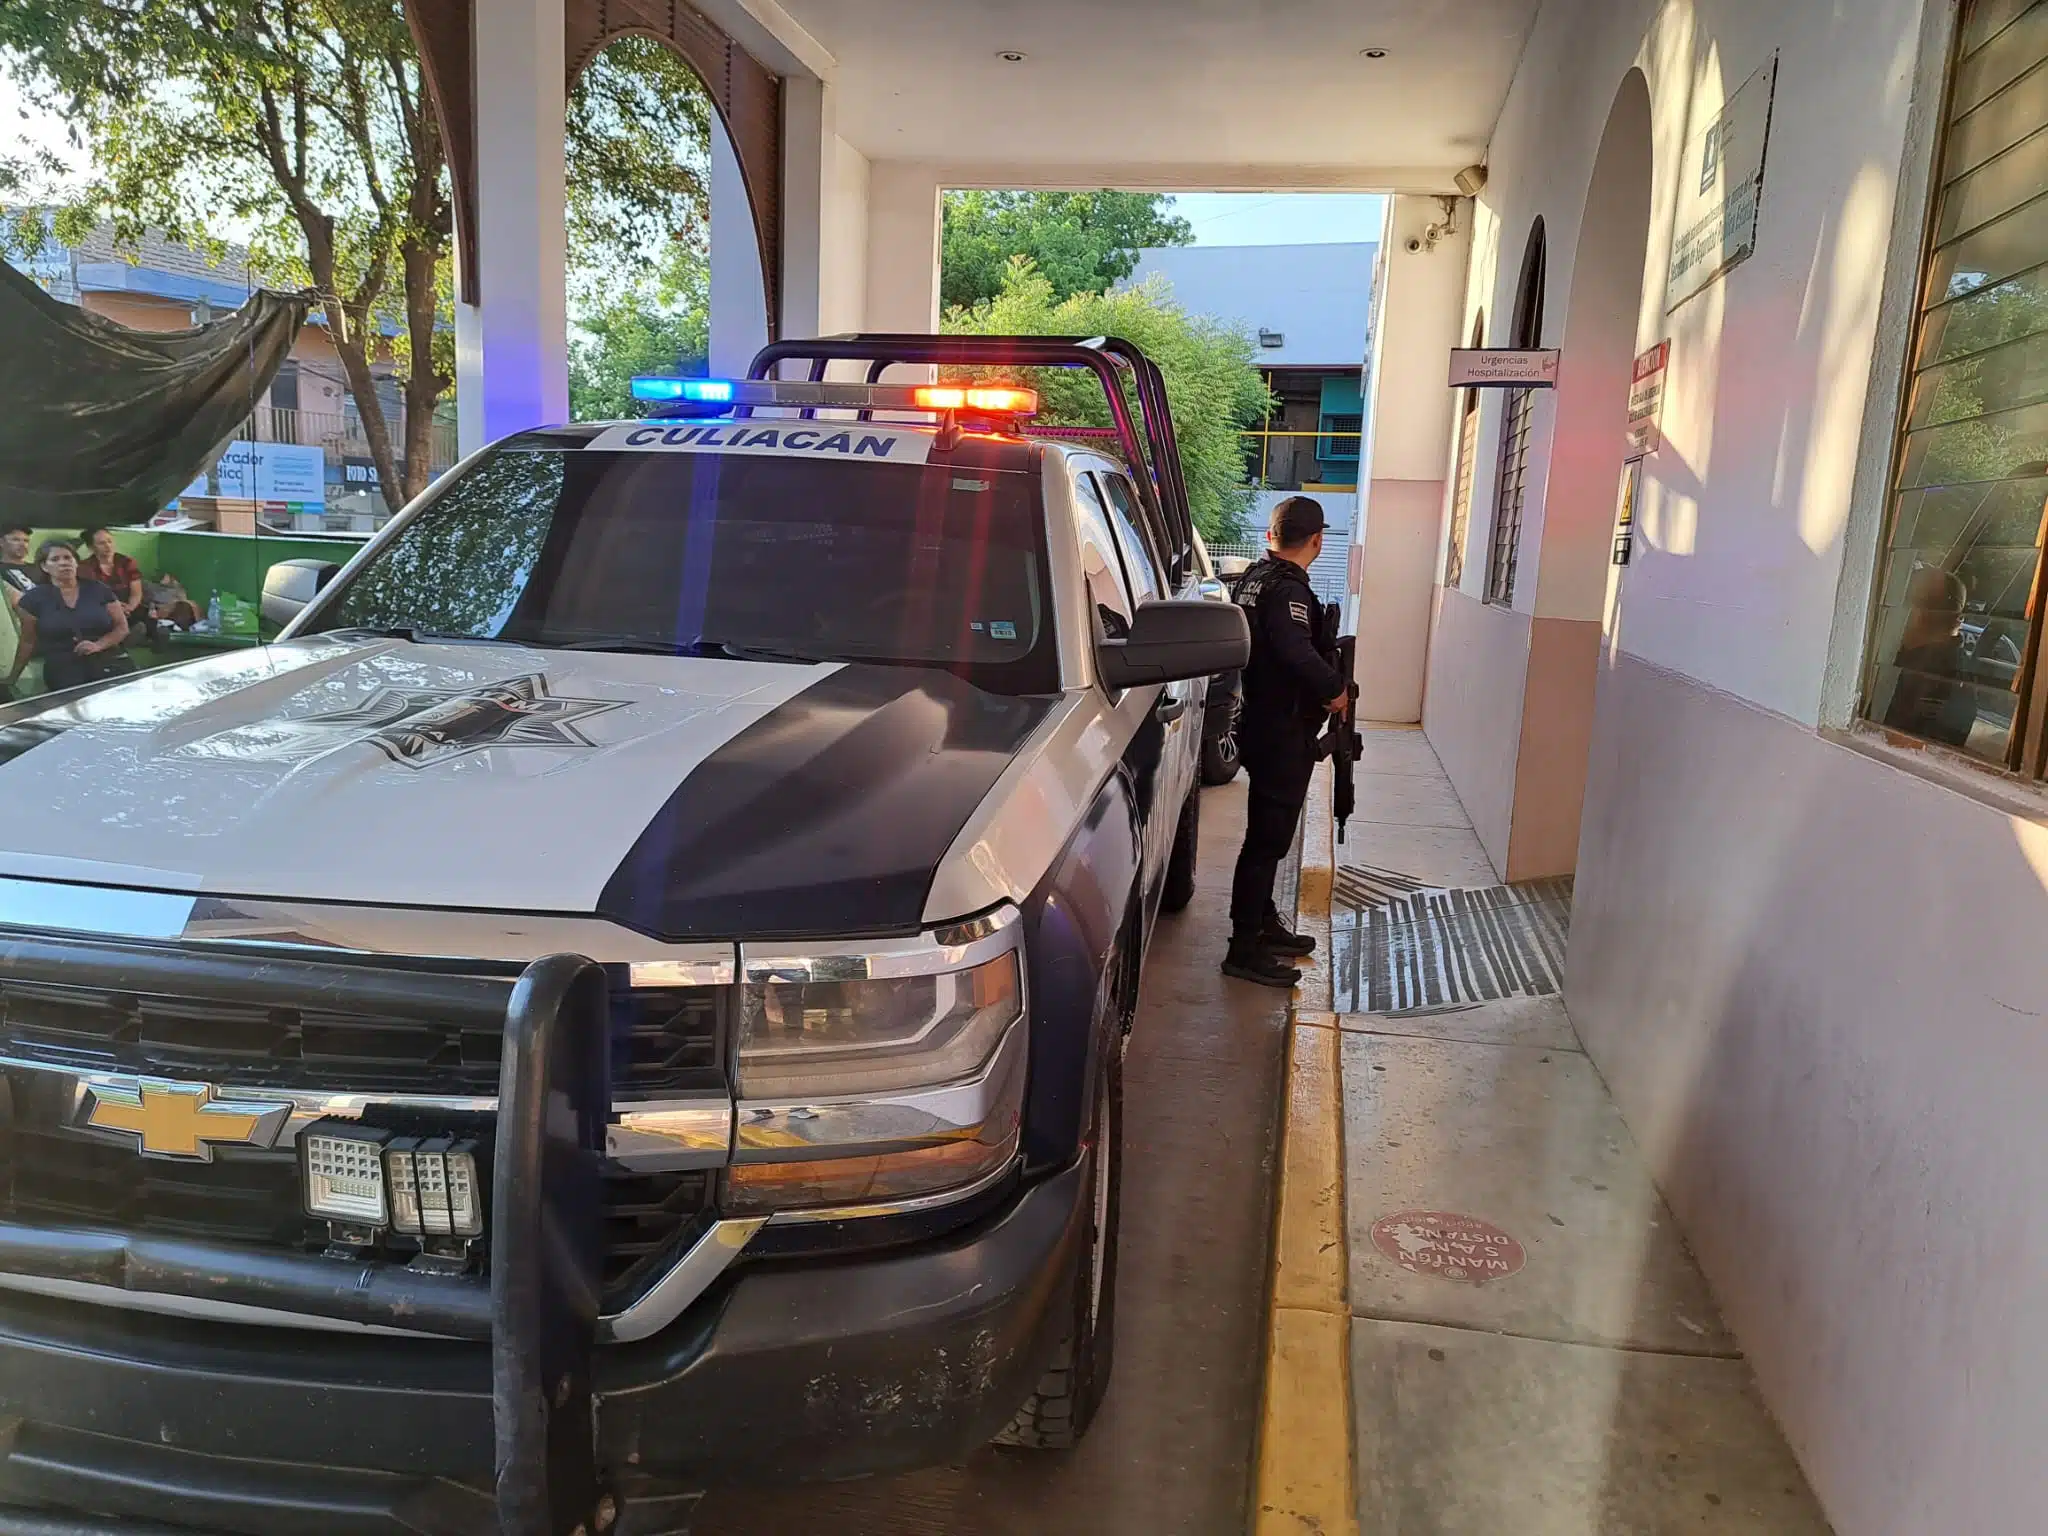 Patrulla de la Policía Municipal de Culiacán afuera del Hospital Civil